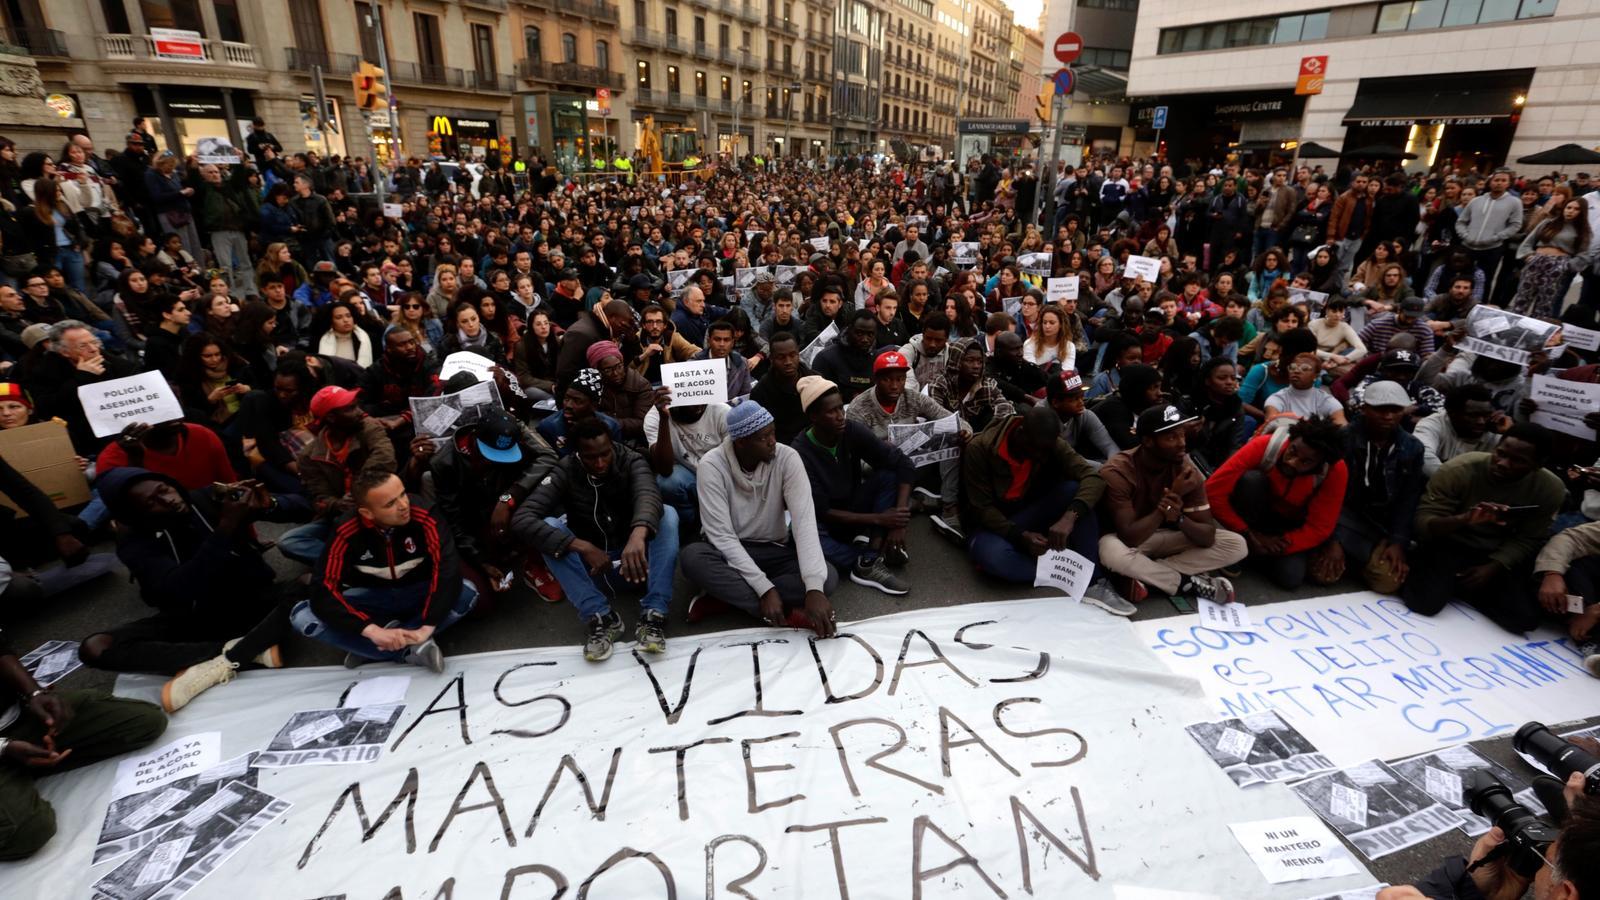 Els manters de Barcelona es mobilitzen en solidaritat pel company mort a Madrid